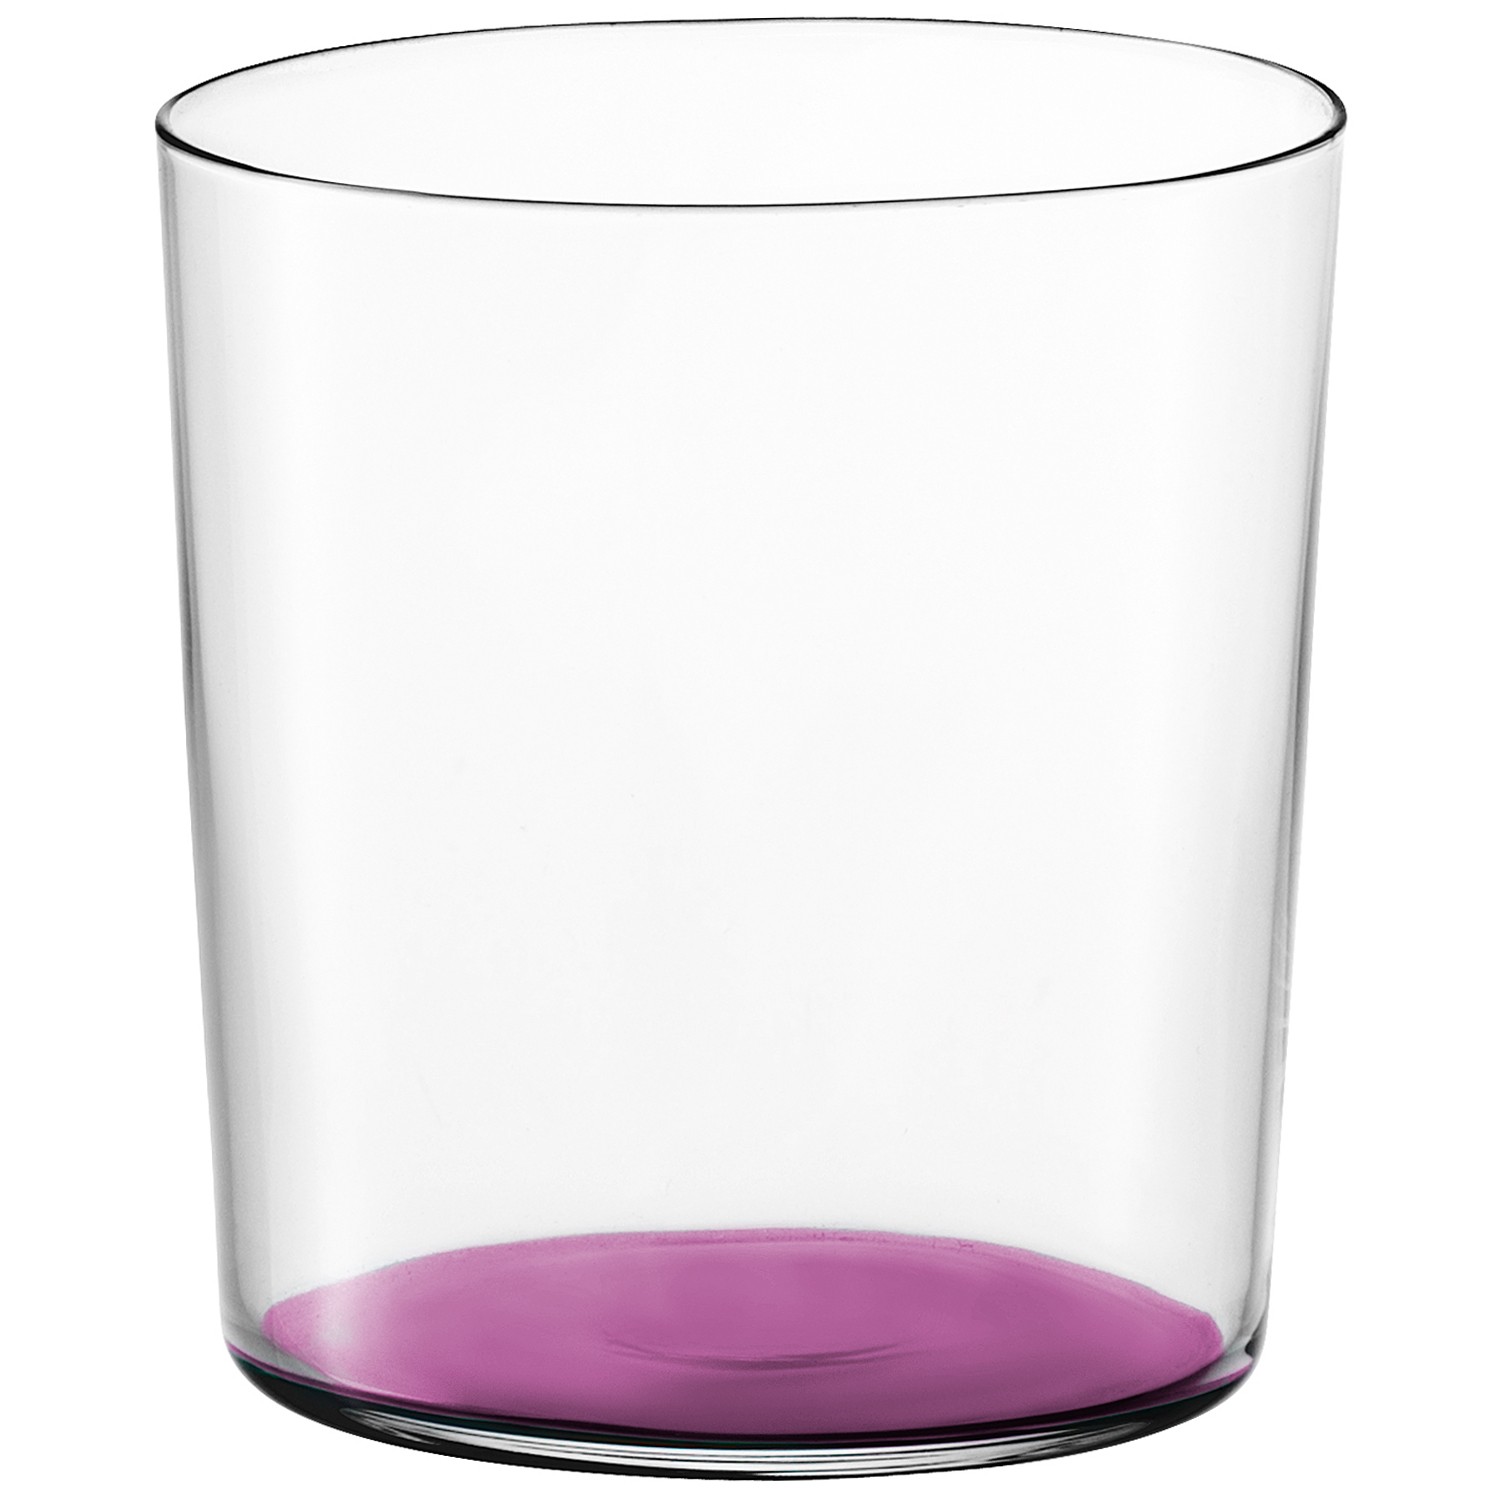 Gio bicchiere colorato 390ml Prugna1